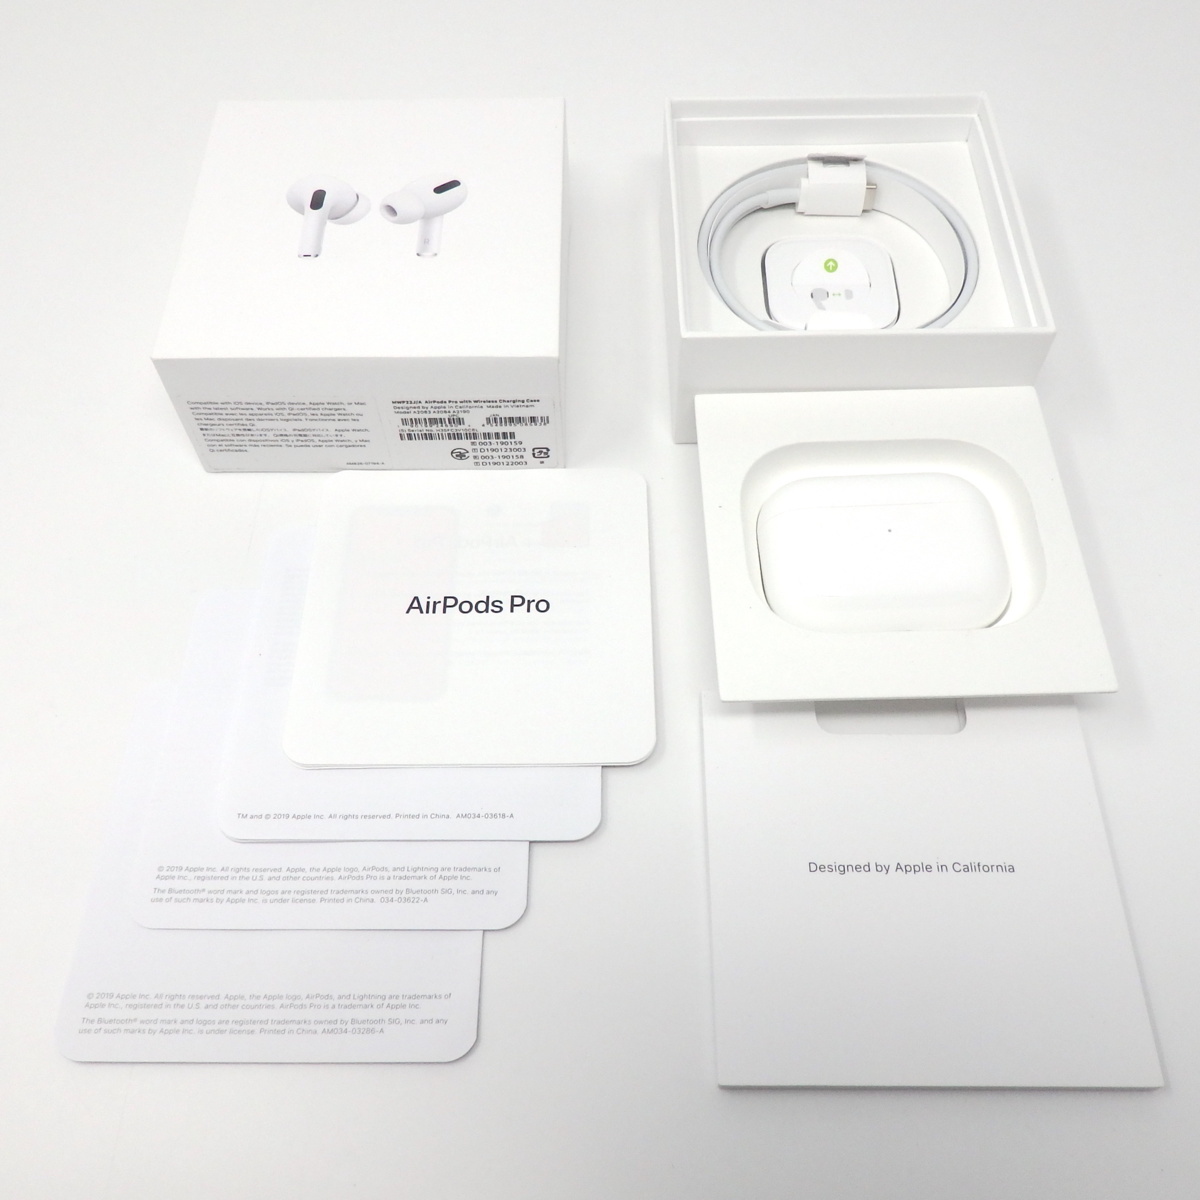 買得 【美品】Apple AirPods ワイヤレス充電ケース付き プロ エアーポッズ (MWP22J/A) Case Charging  Wireless with Pro - その他 - labelians.fr